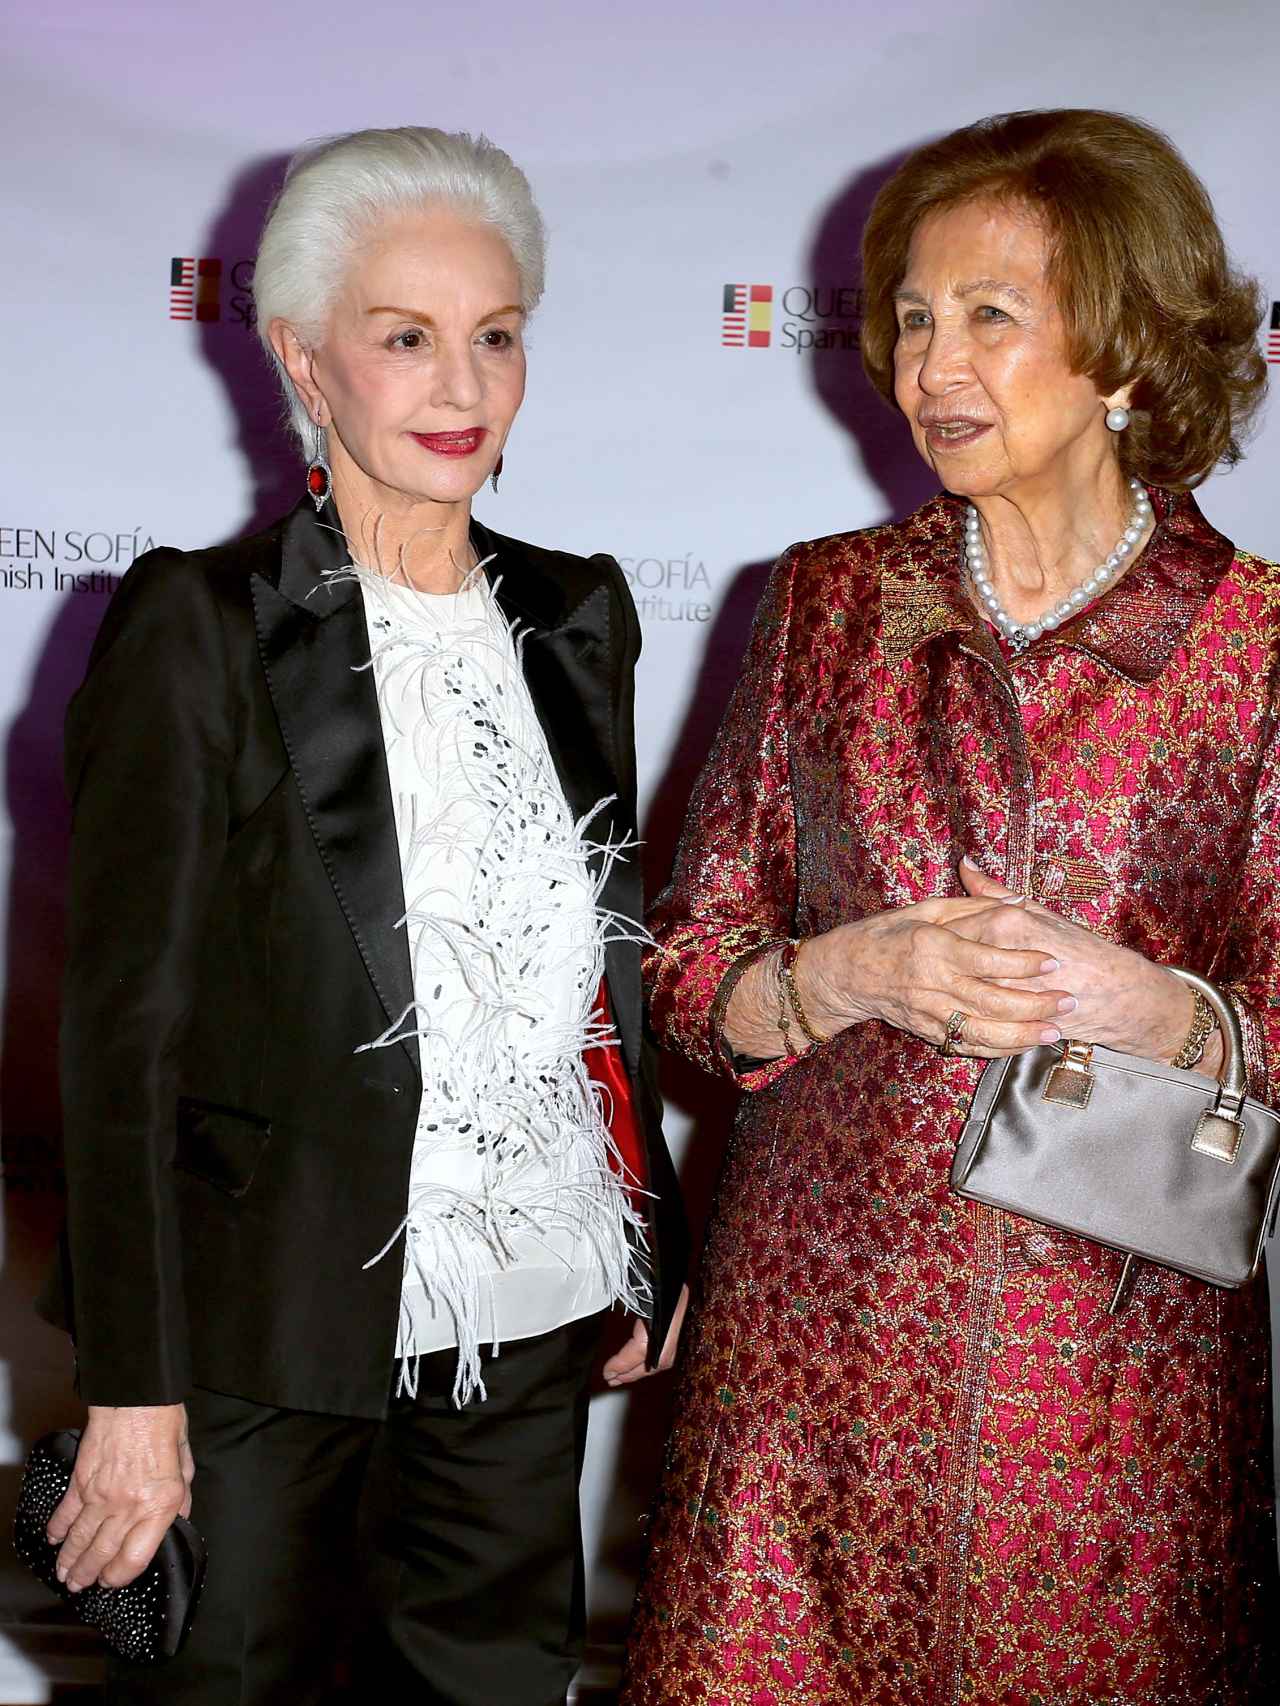 La reina Sofía ha estado en Nueva York esta semana con la diseñadora Carolina Herrera.